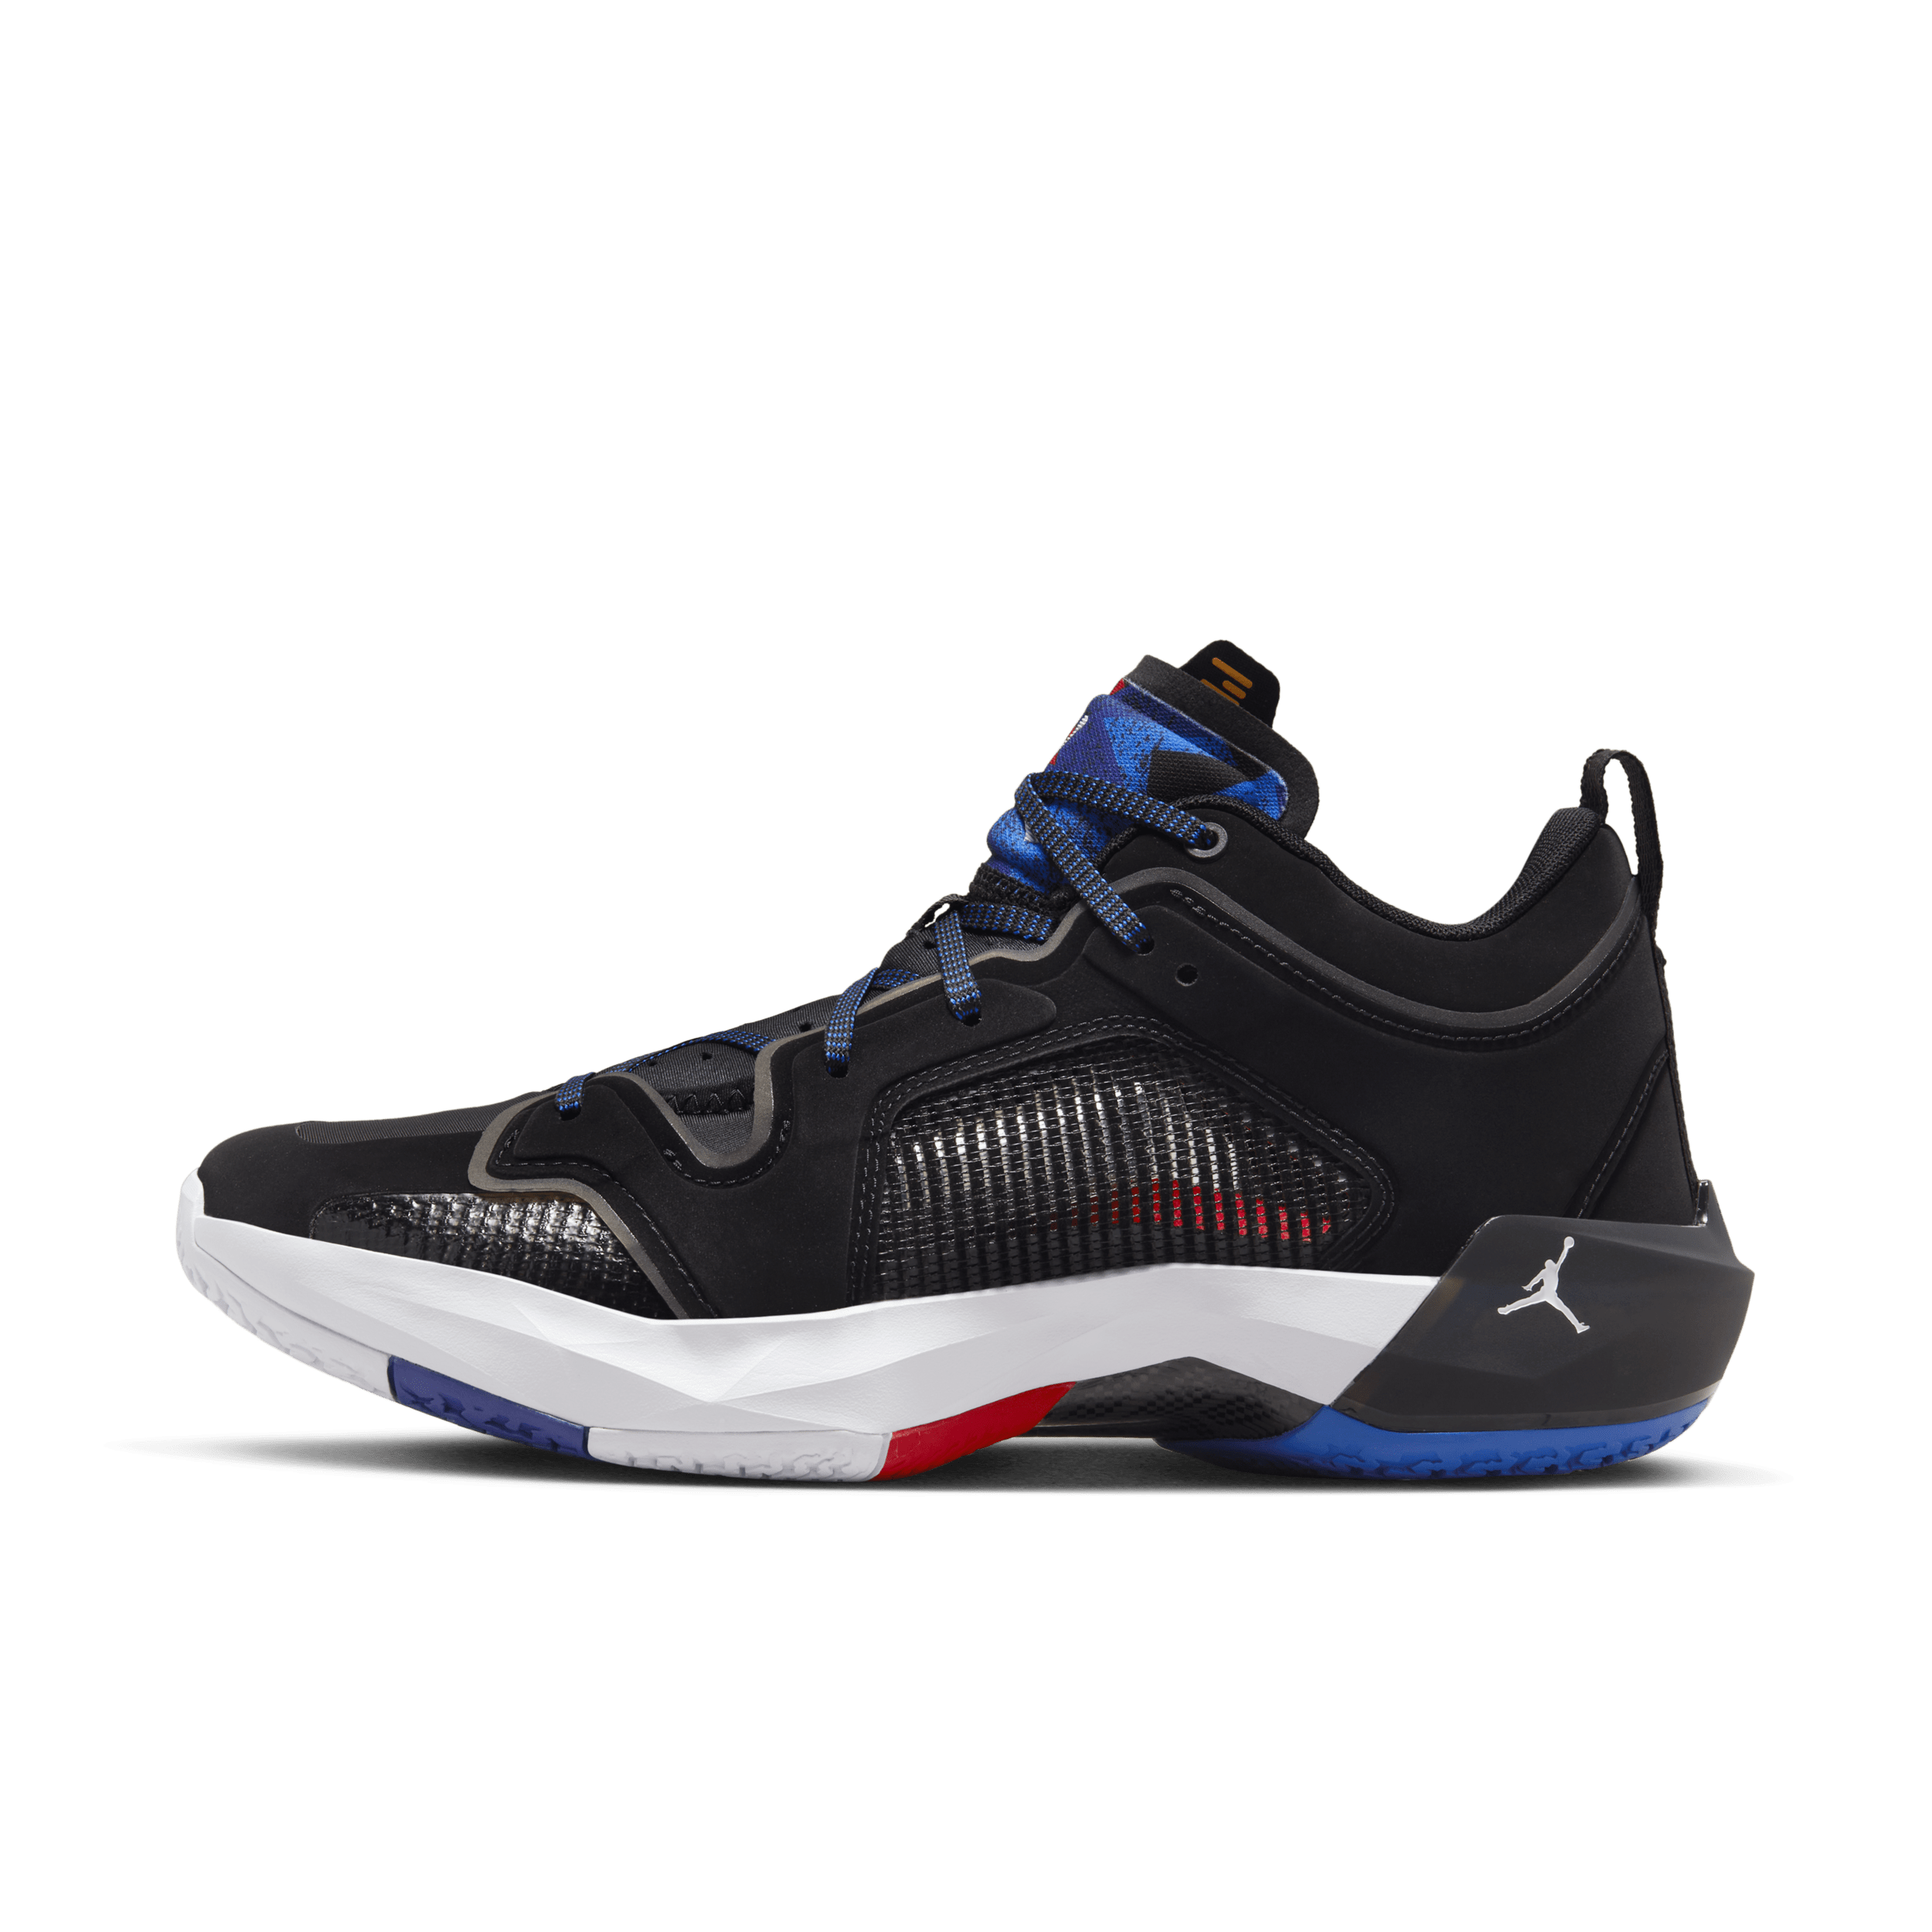 Air Jordan XXXVII Low Basketbalschoenen - Zwart